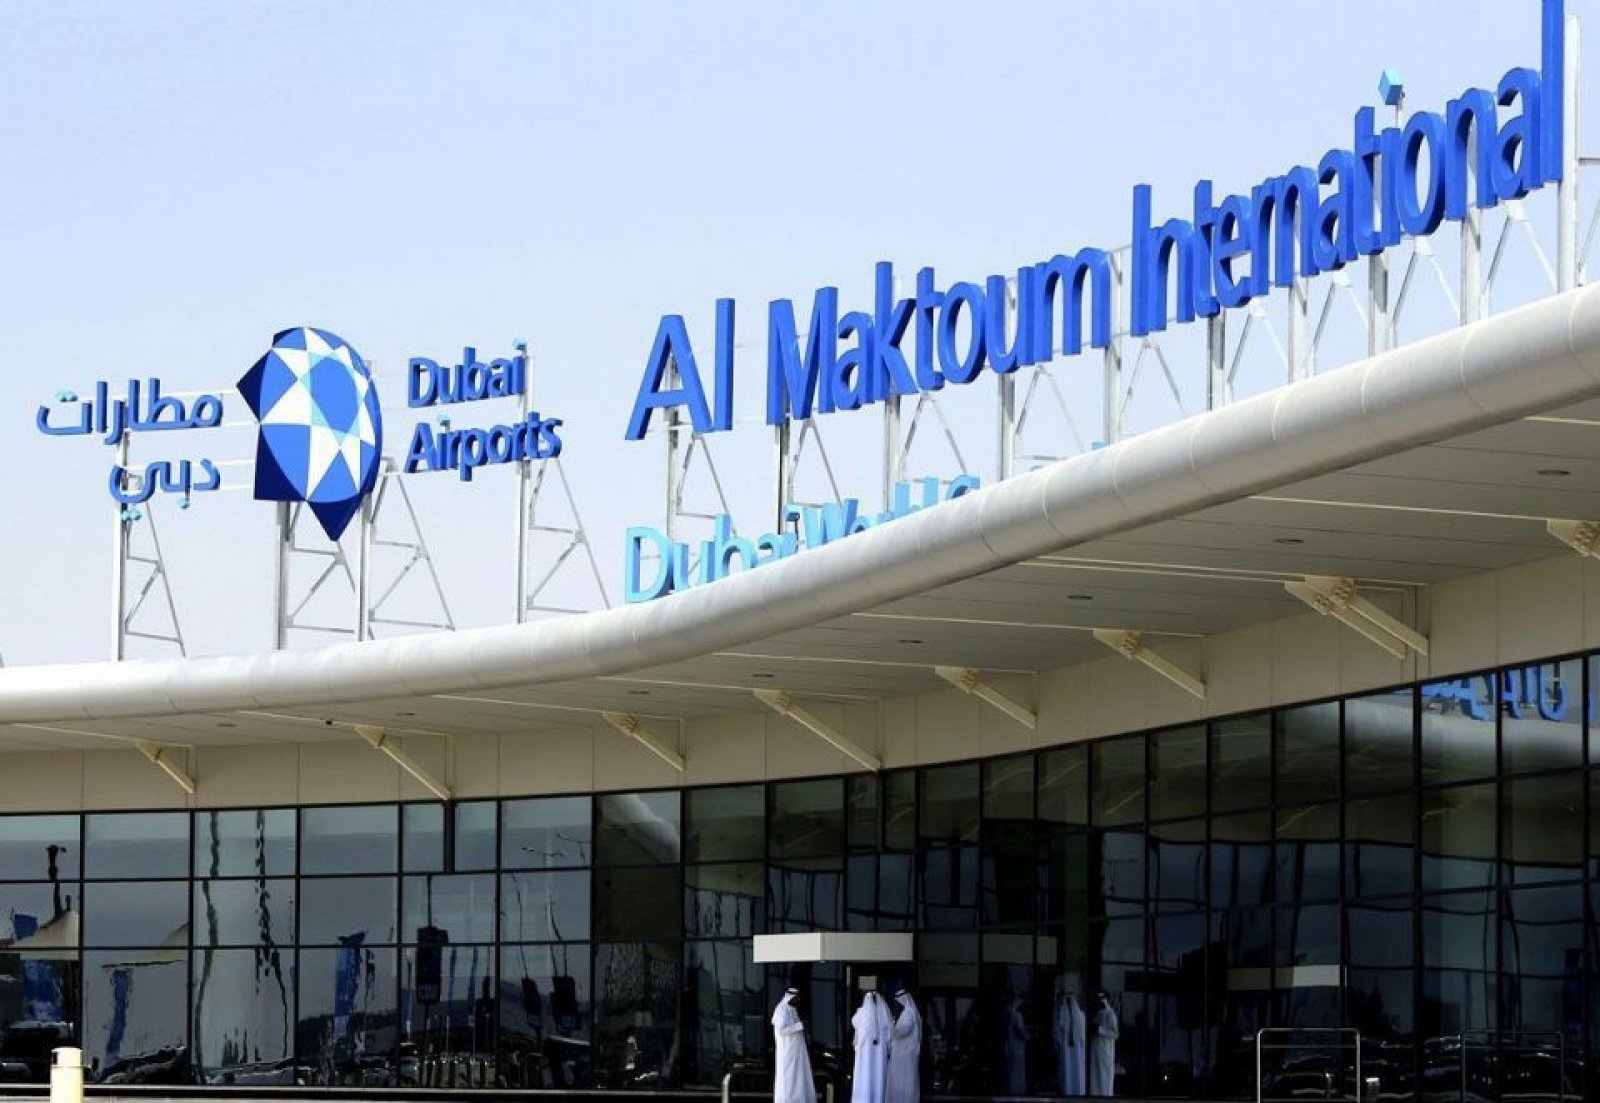 Dubai Al Maktoum Airport, U.A.E.